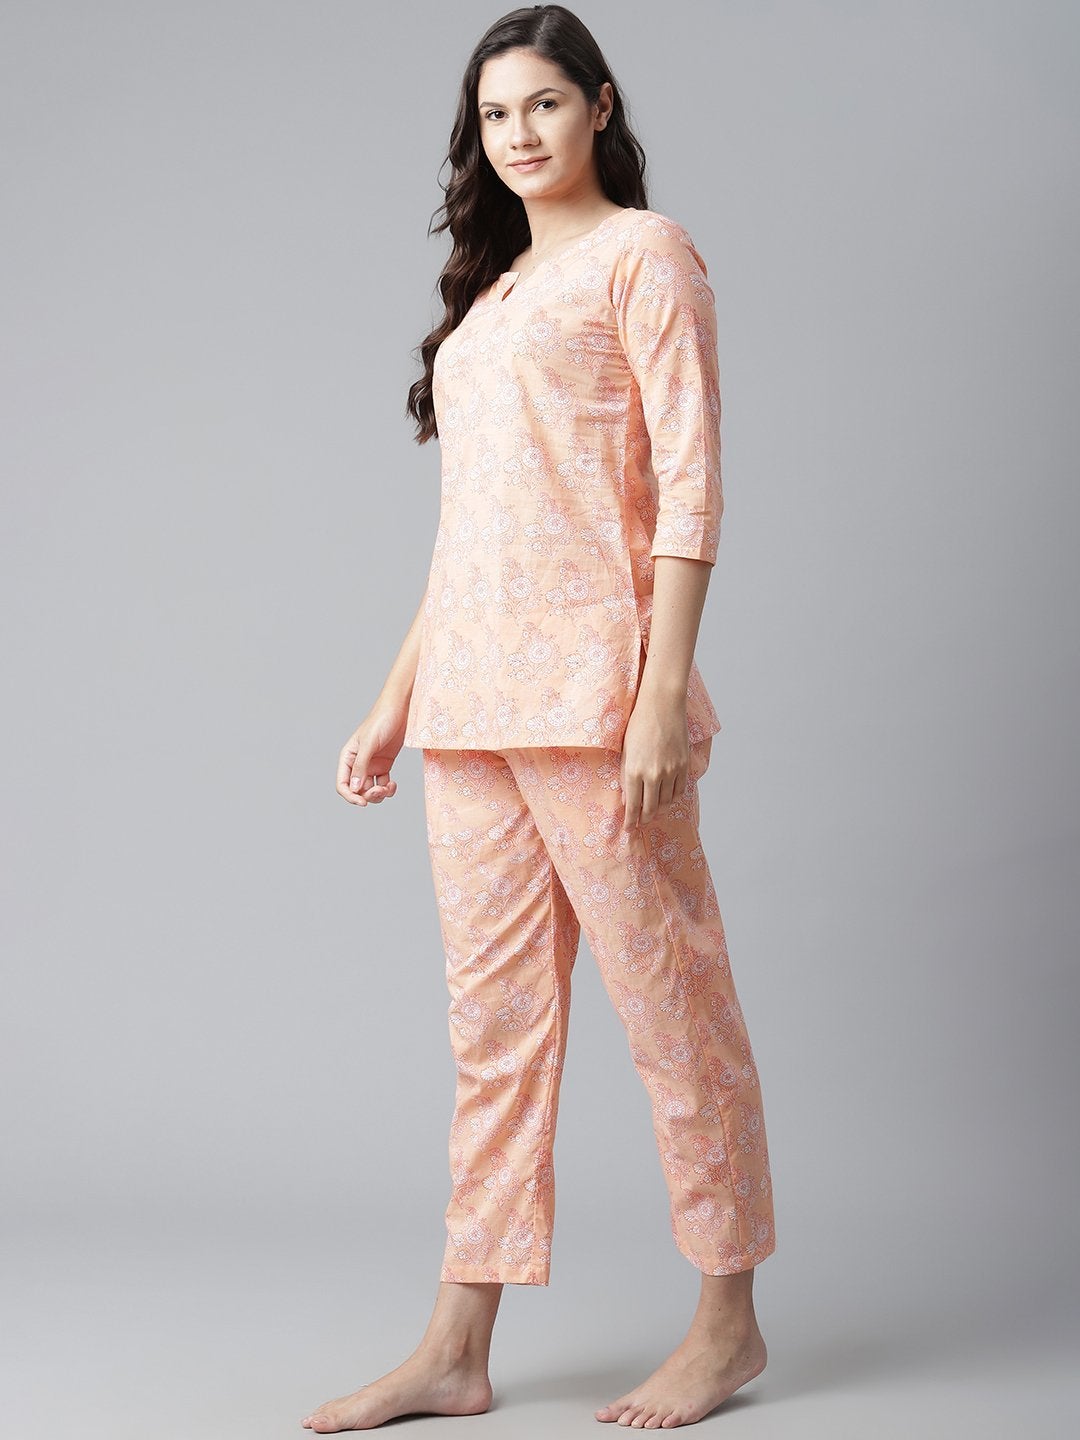 Women's Peach Printed Cotton Nightwear - Noz2Toz